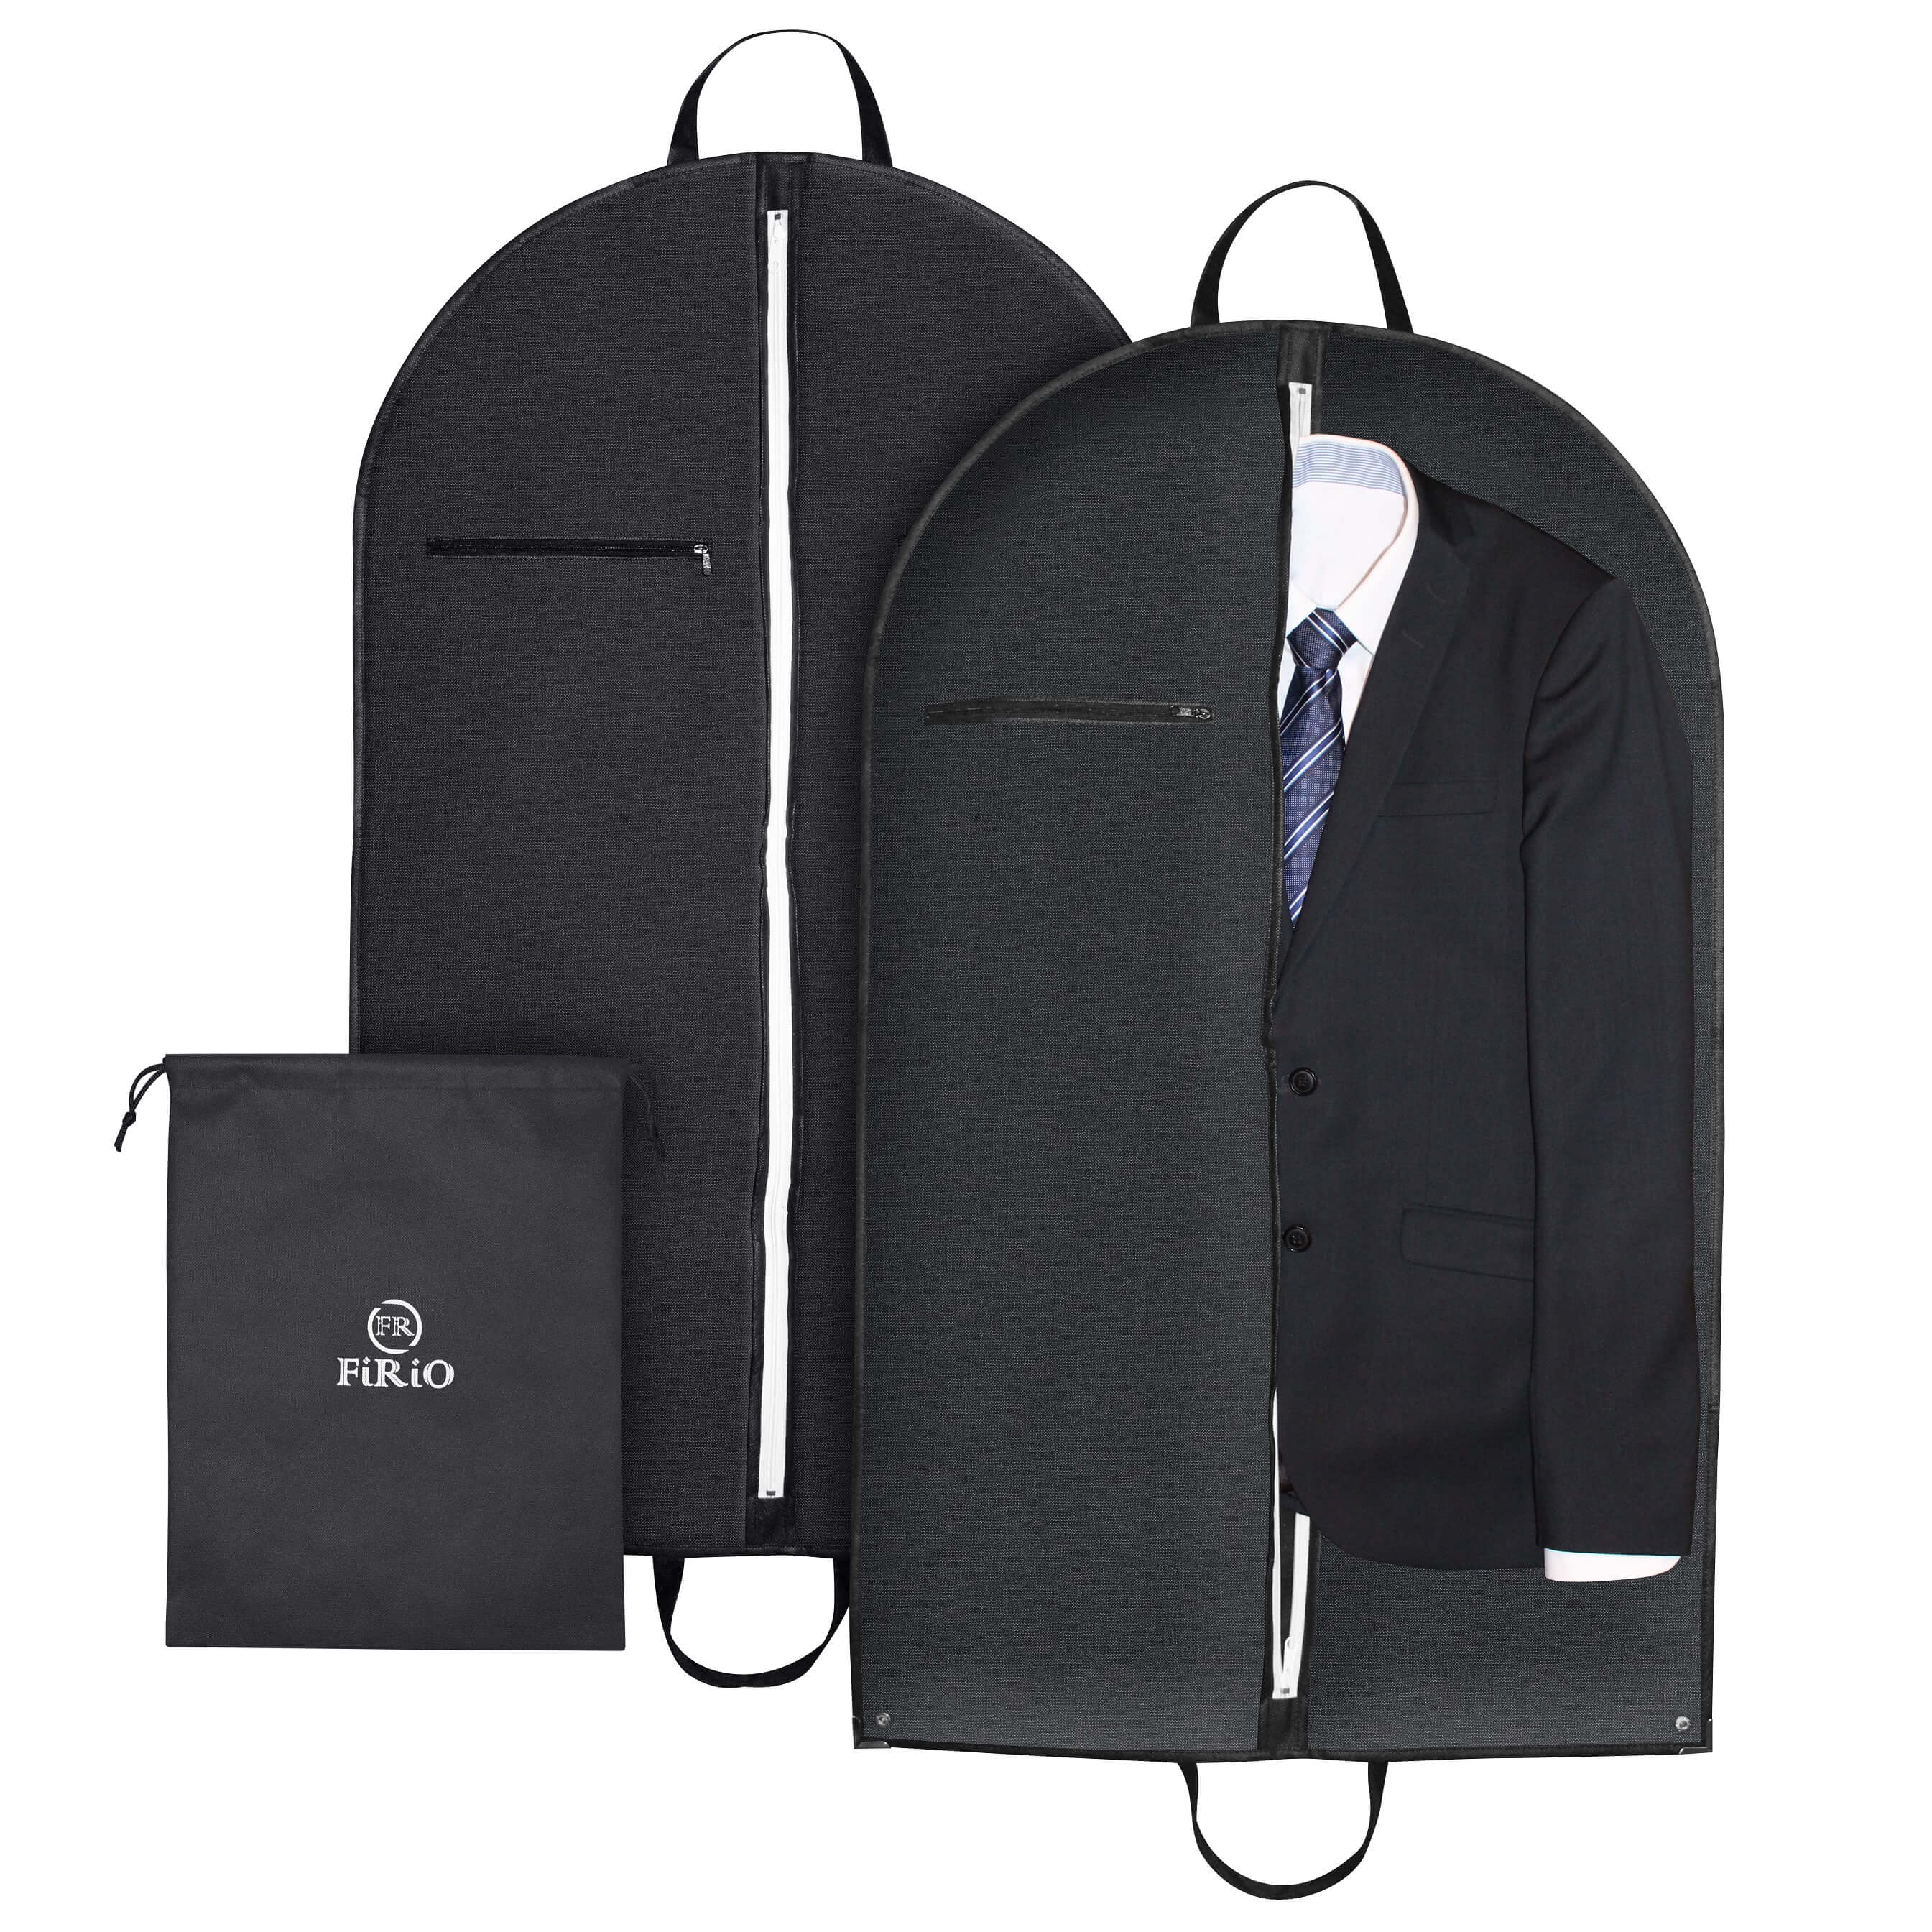 12 x Kleidersack Anzug Schutzhülle Vlies Kleideraufbewahrung Anzugsack schwarz 